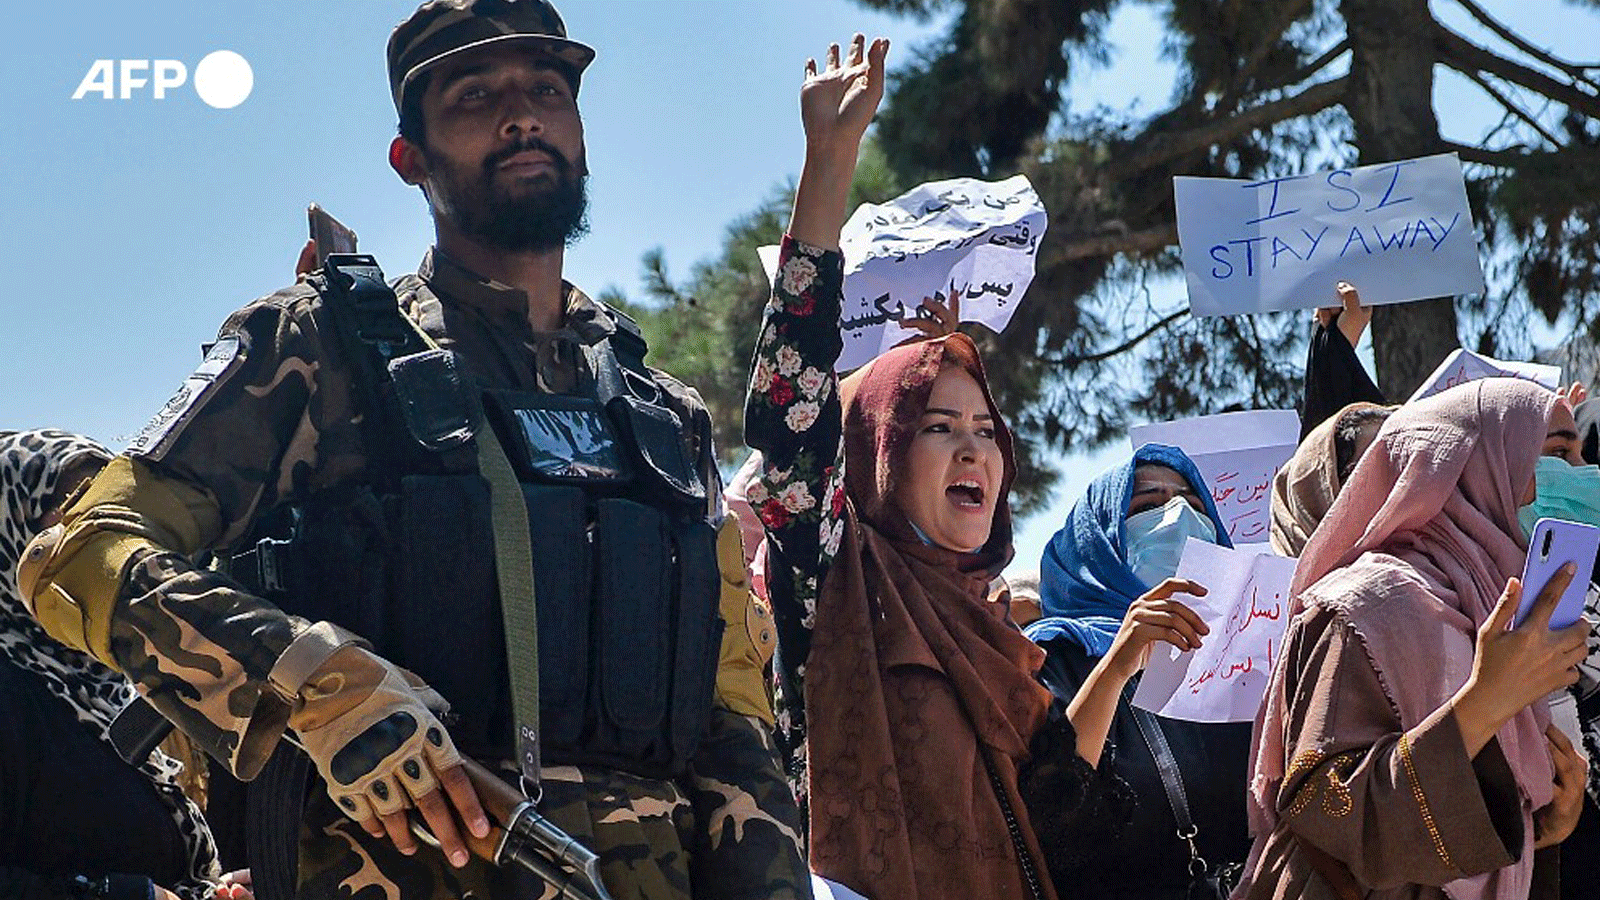 النساء يشاركن في التظاهرة أمام السفارة الباكستانية مطالبين بالحرية والمشاركة في السلطة. 7 أيلول/ سبتمبر 2021